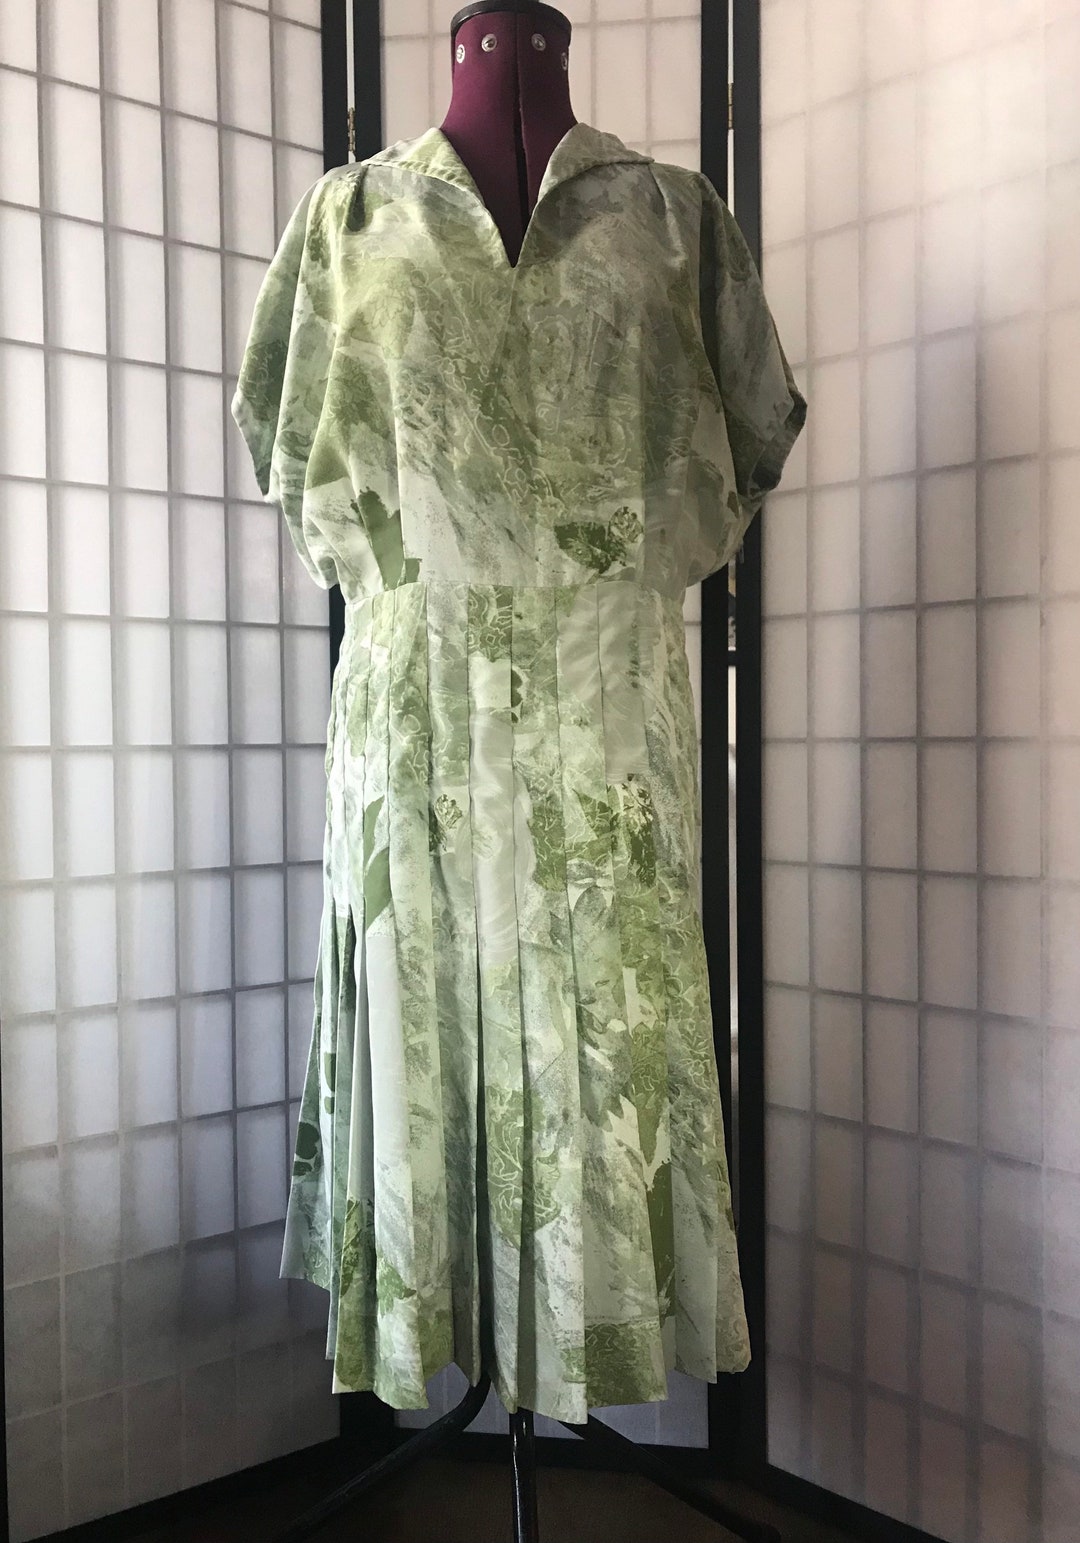 Unique 1980s Green Leaf Print Vintage Dress. - Etsy UK